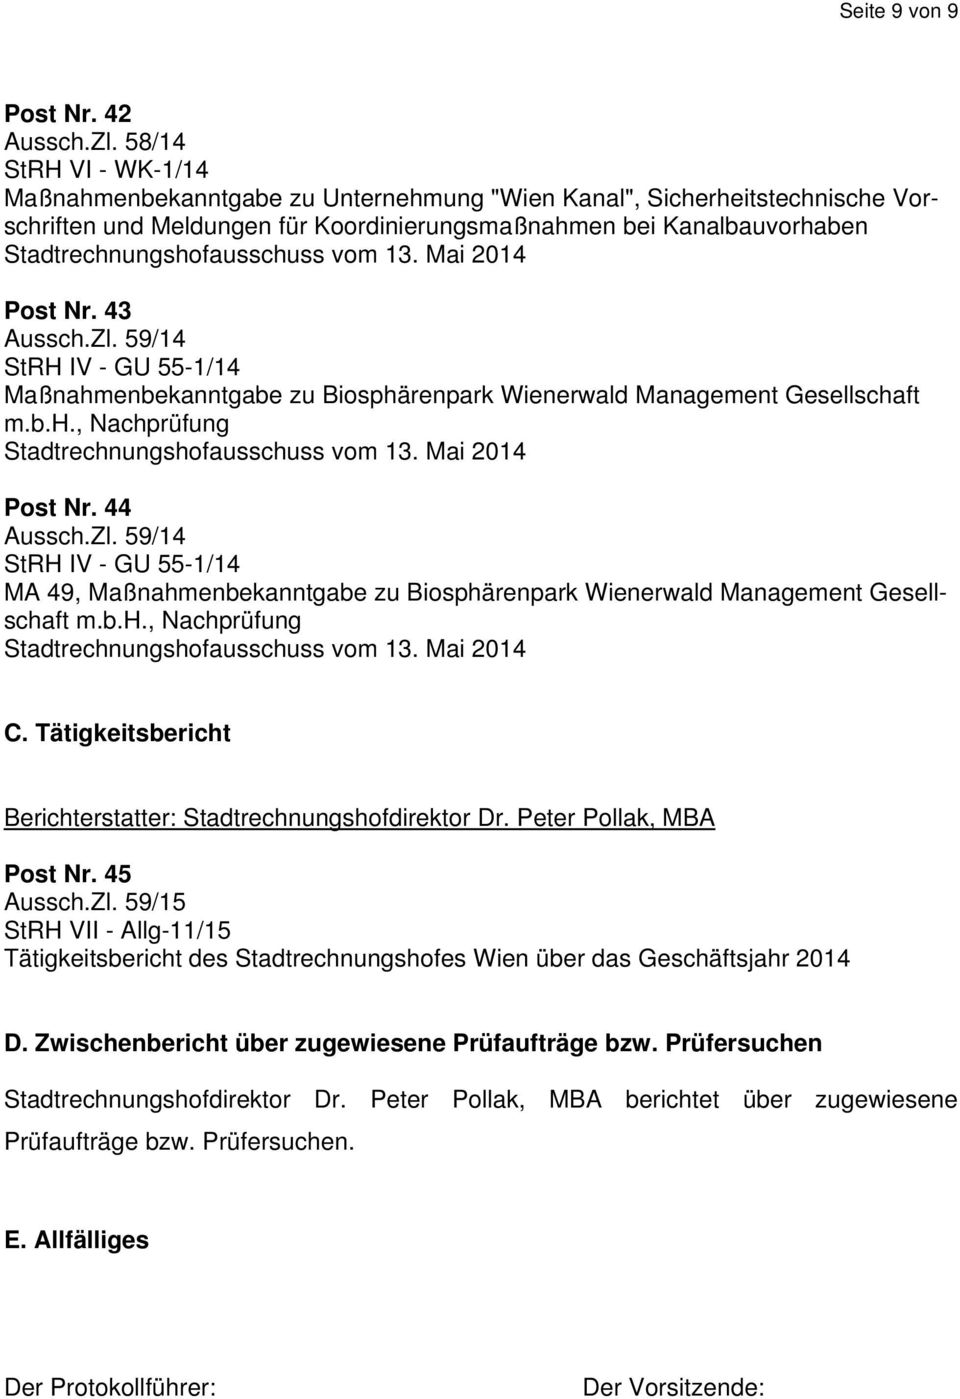 59/14 StRH IV - GU 55-1/14 Maßnahmenbekanntgabe zu Biosphärenpark Wienerwald Management Gesellschaft m.b.h., Nachprüfung Post Nr. 44 Aussch.Zl.